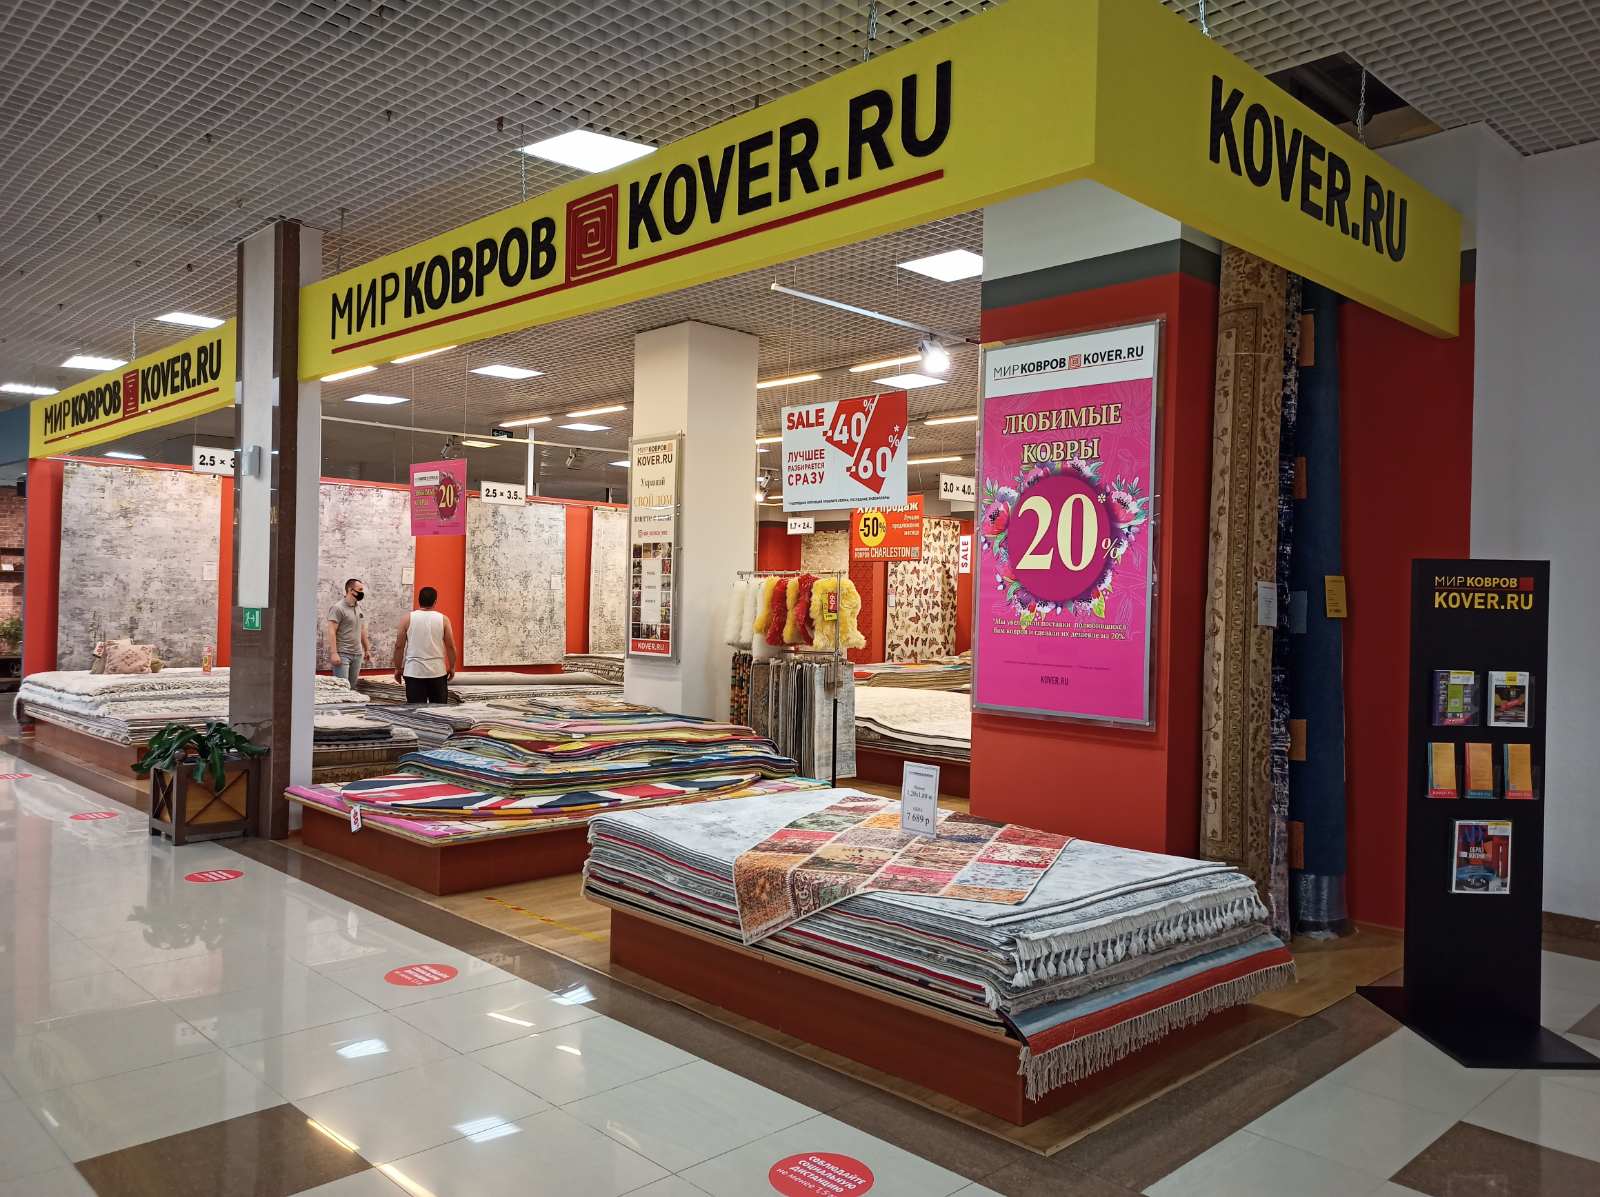 Салон «Мир Ковров | Kover.ru» в «Мебельный центр на Красной площади» 3 этаж